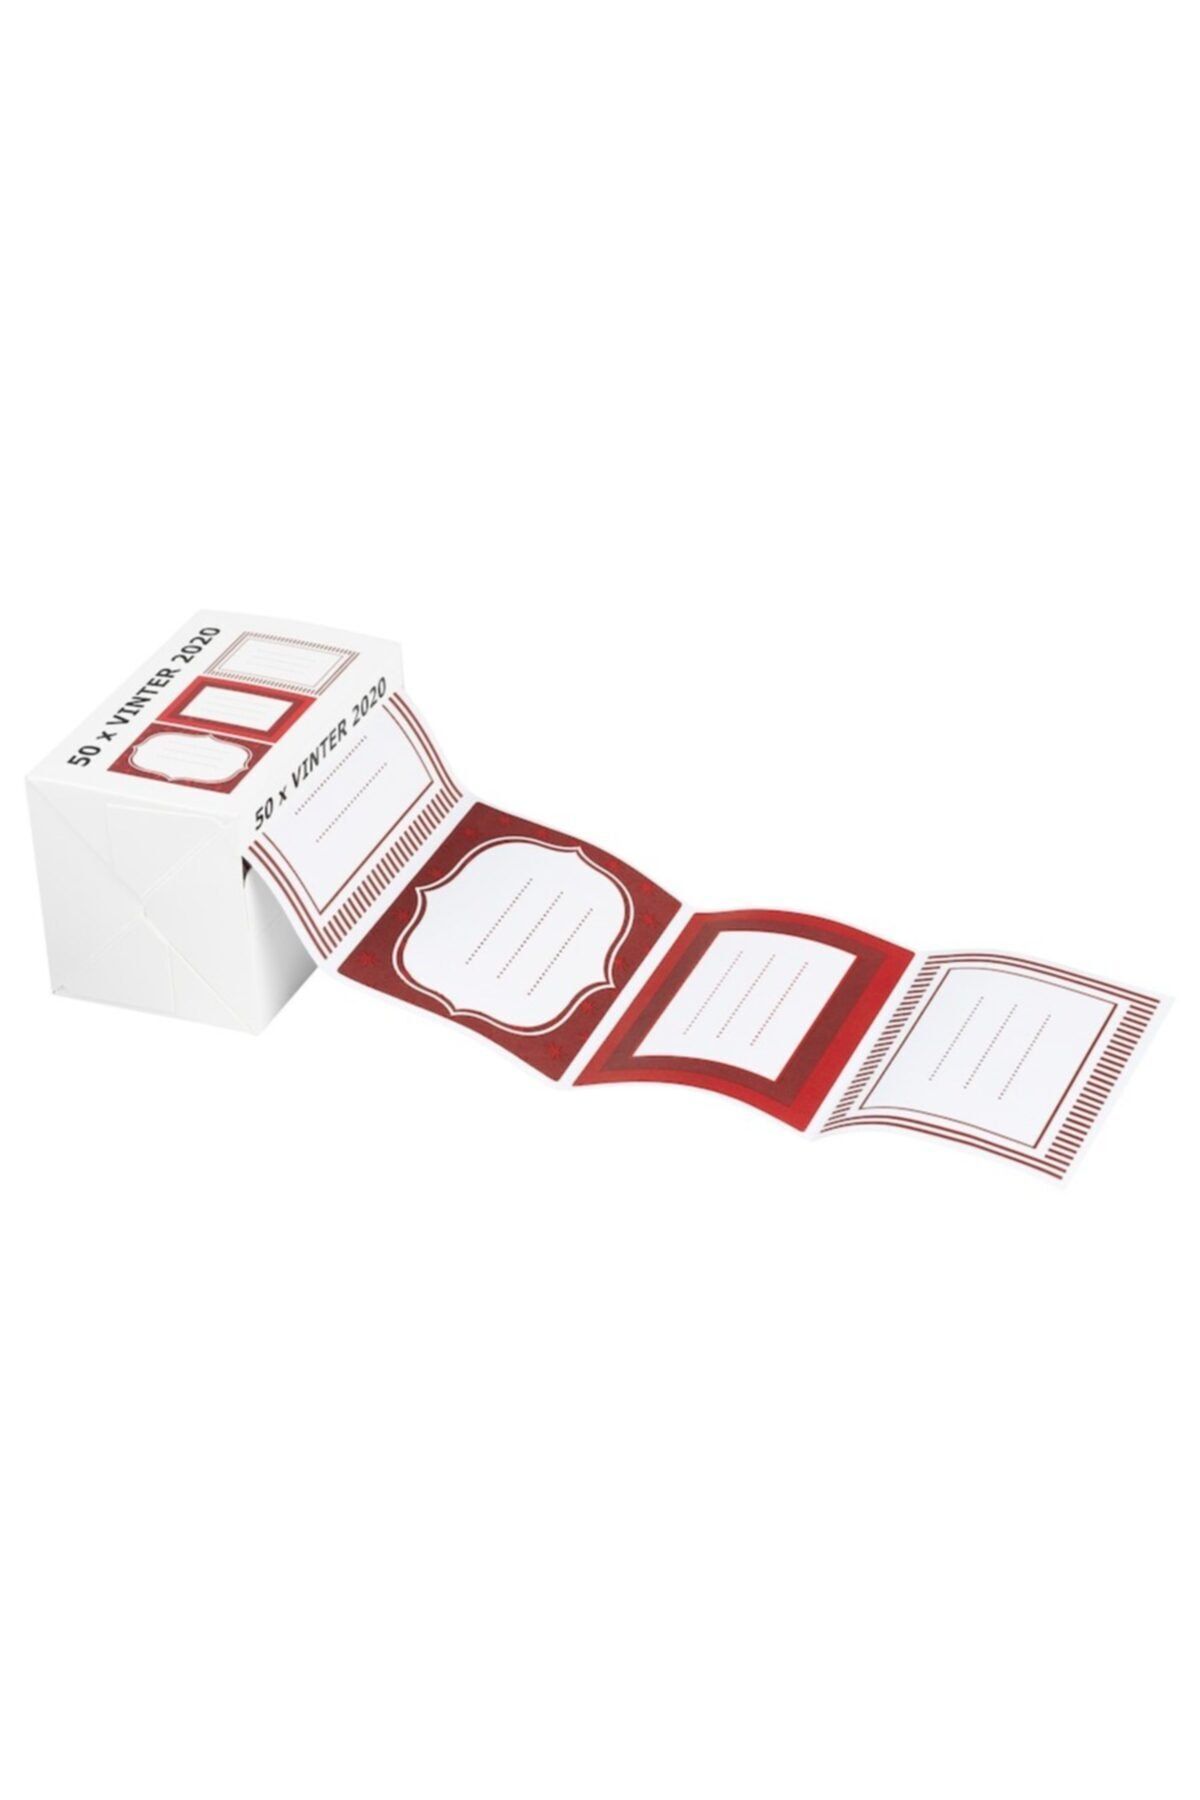 IKEA Vınter Kırmızı Beyaz 50 Adet Hediye Paketi Etiketi Çıkartma 81x55 Mm